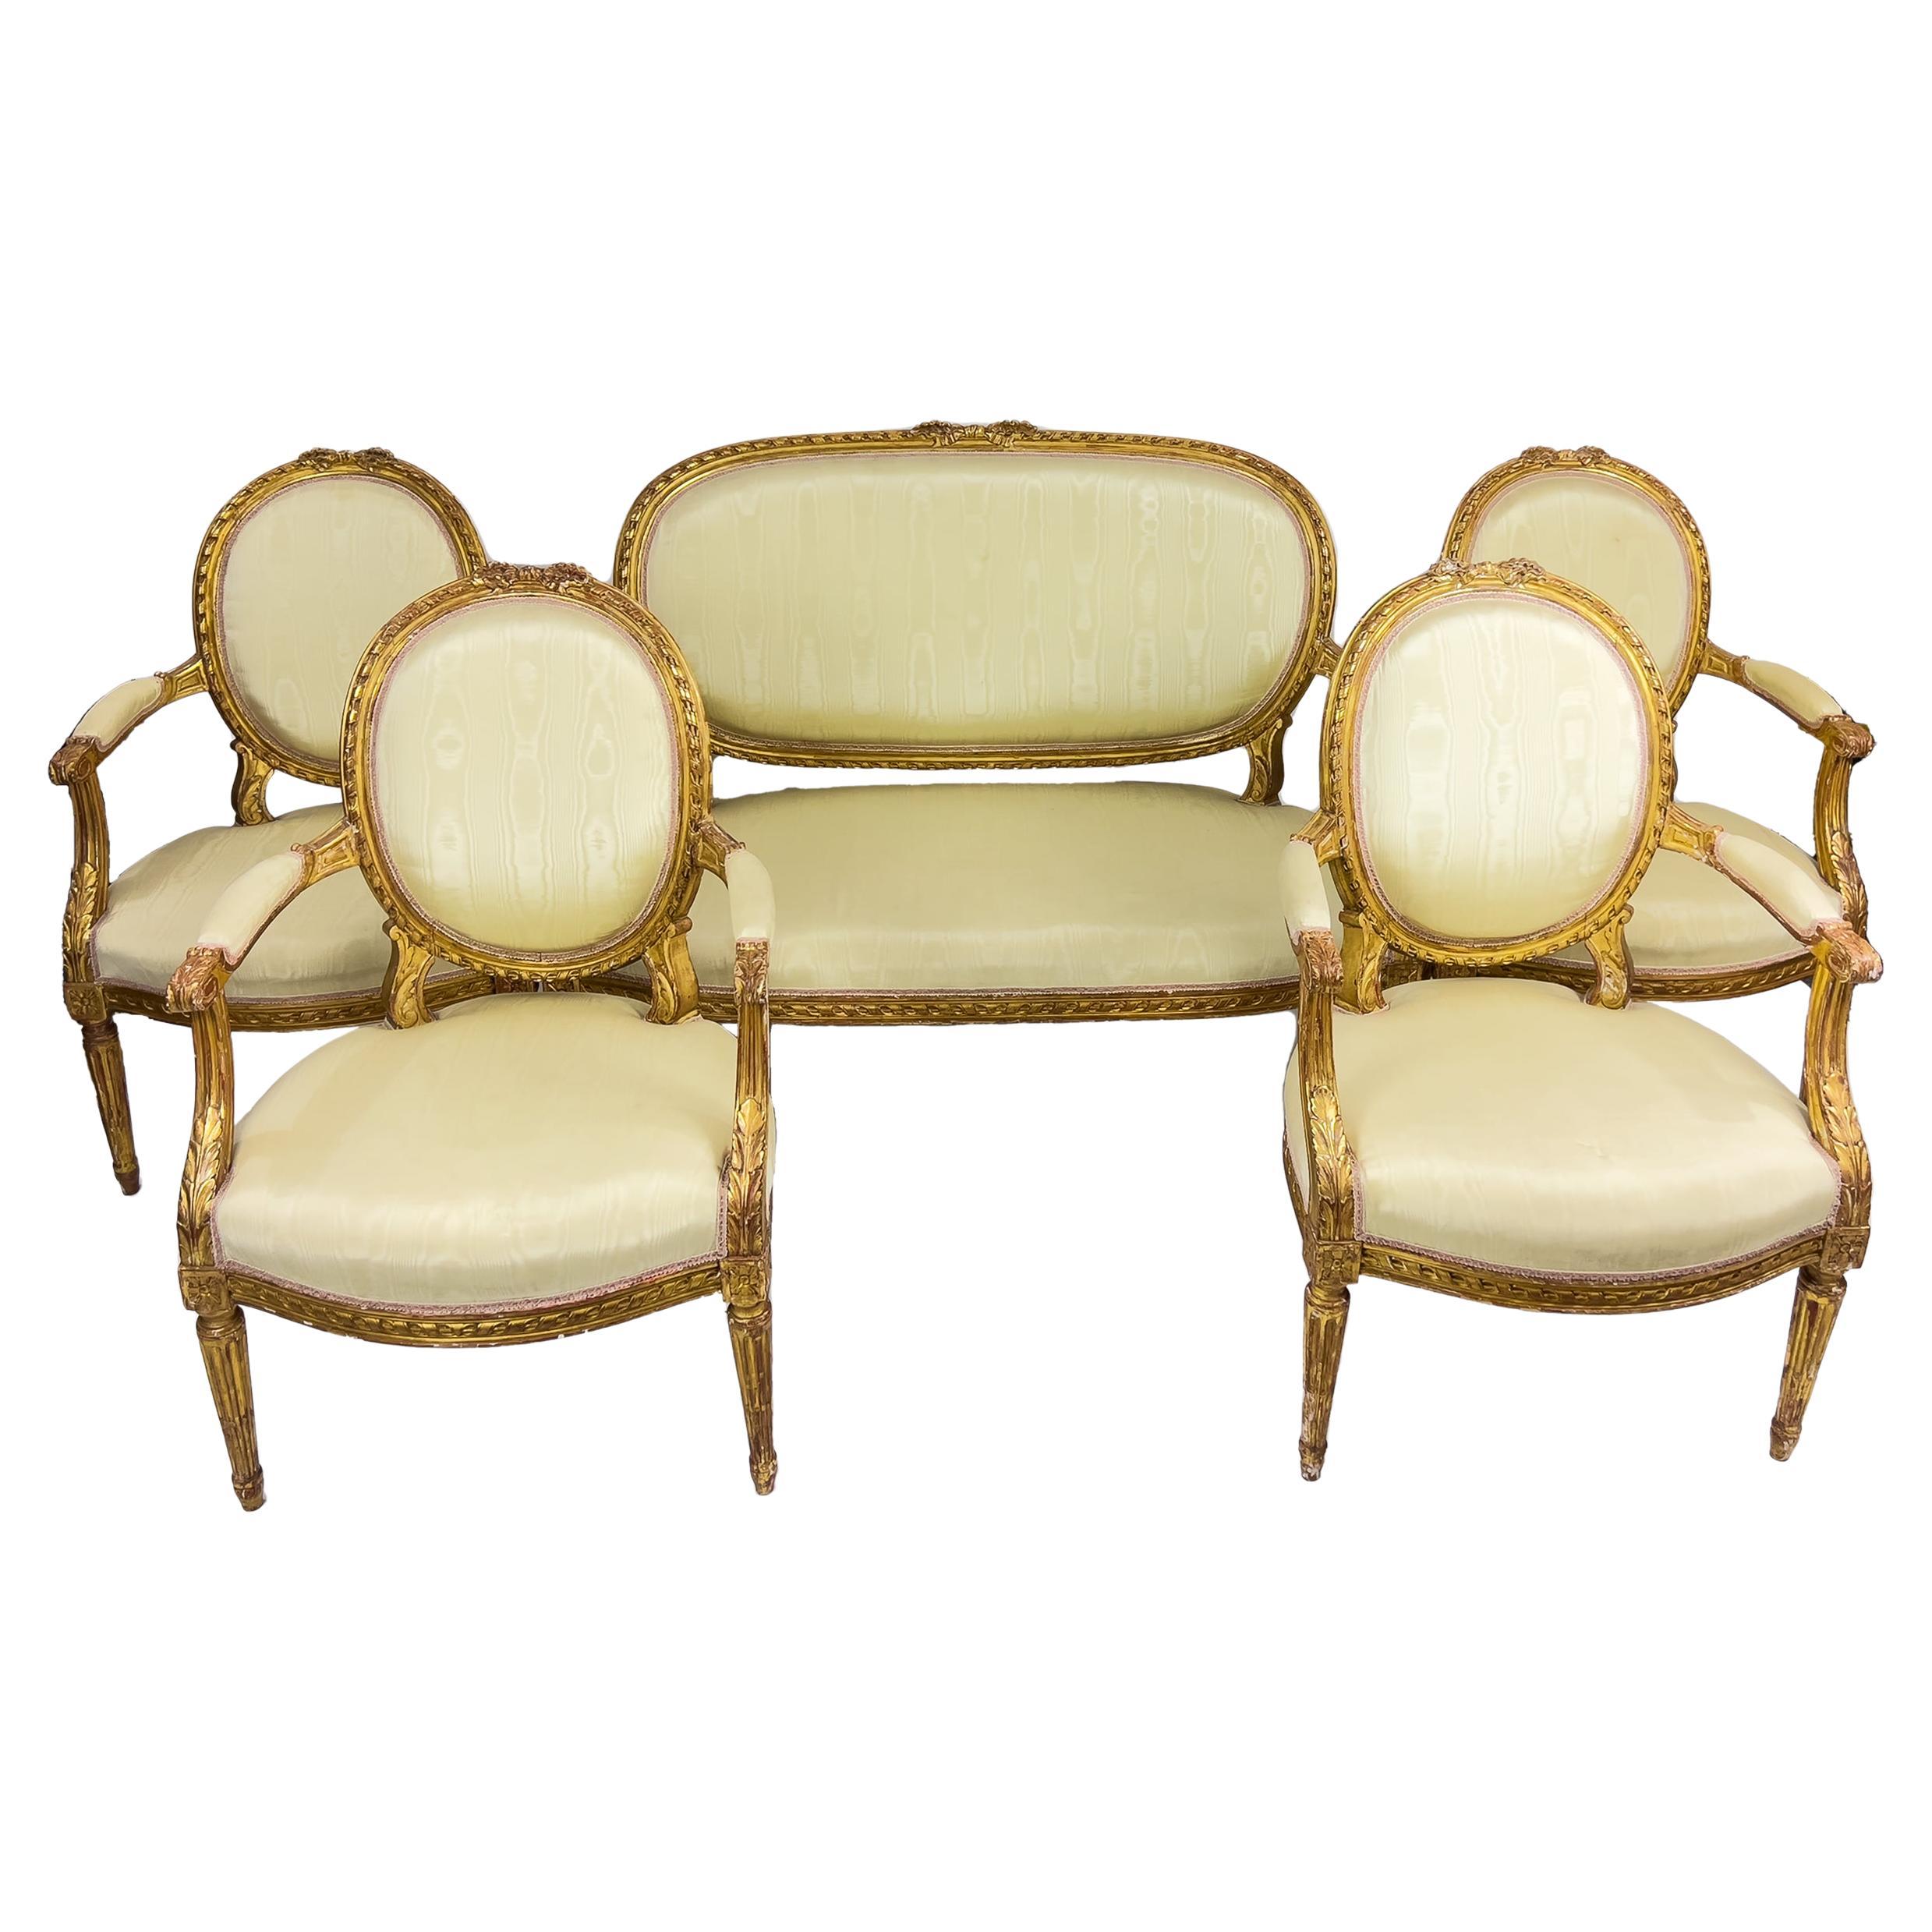 Suite de salon à cinq pièces en bois doré de style Louis XVI du XIXe siècle